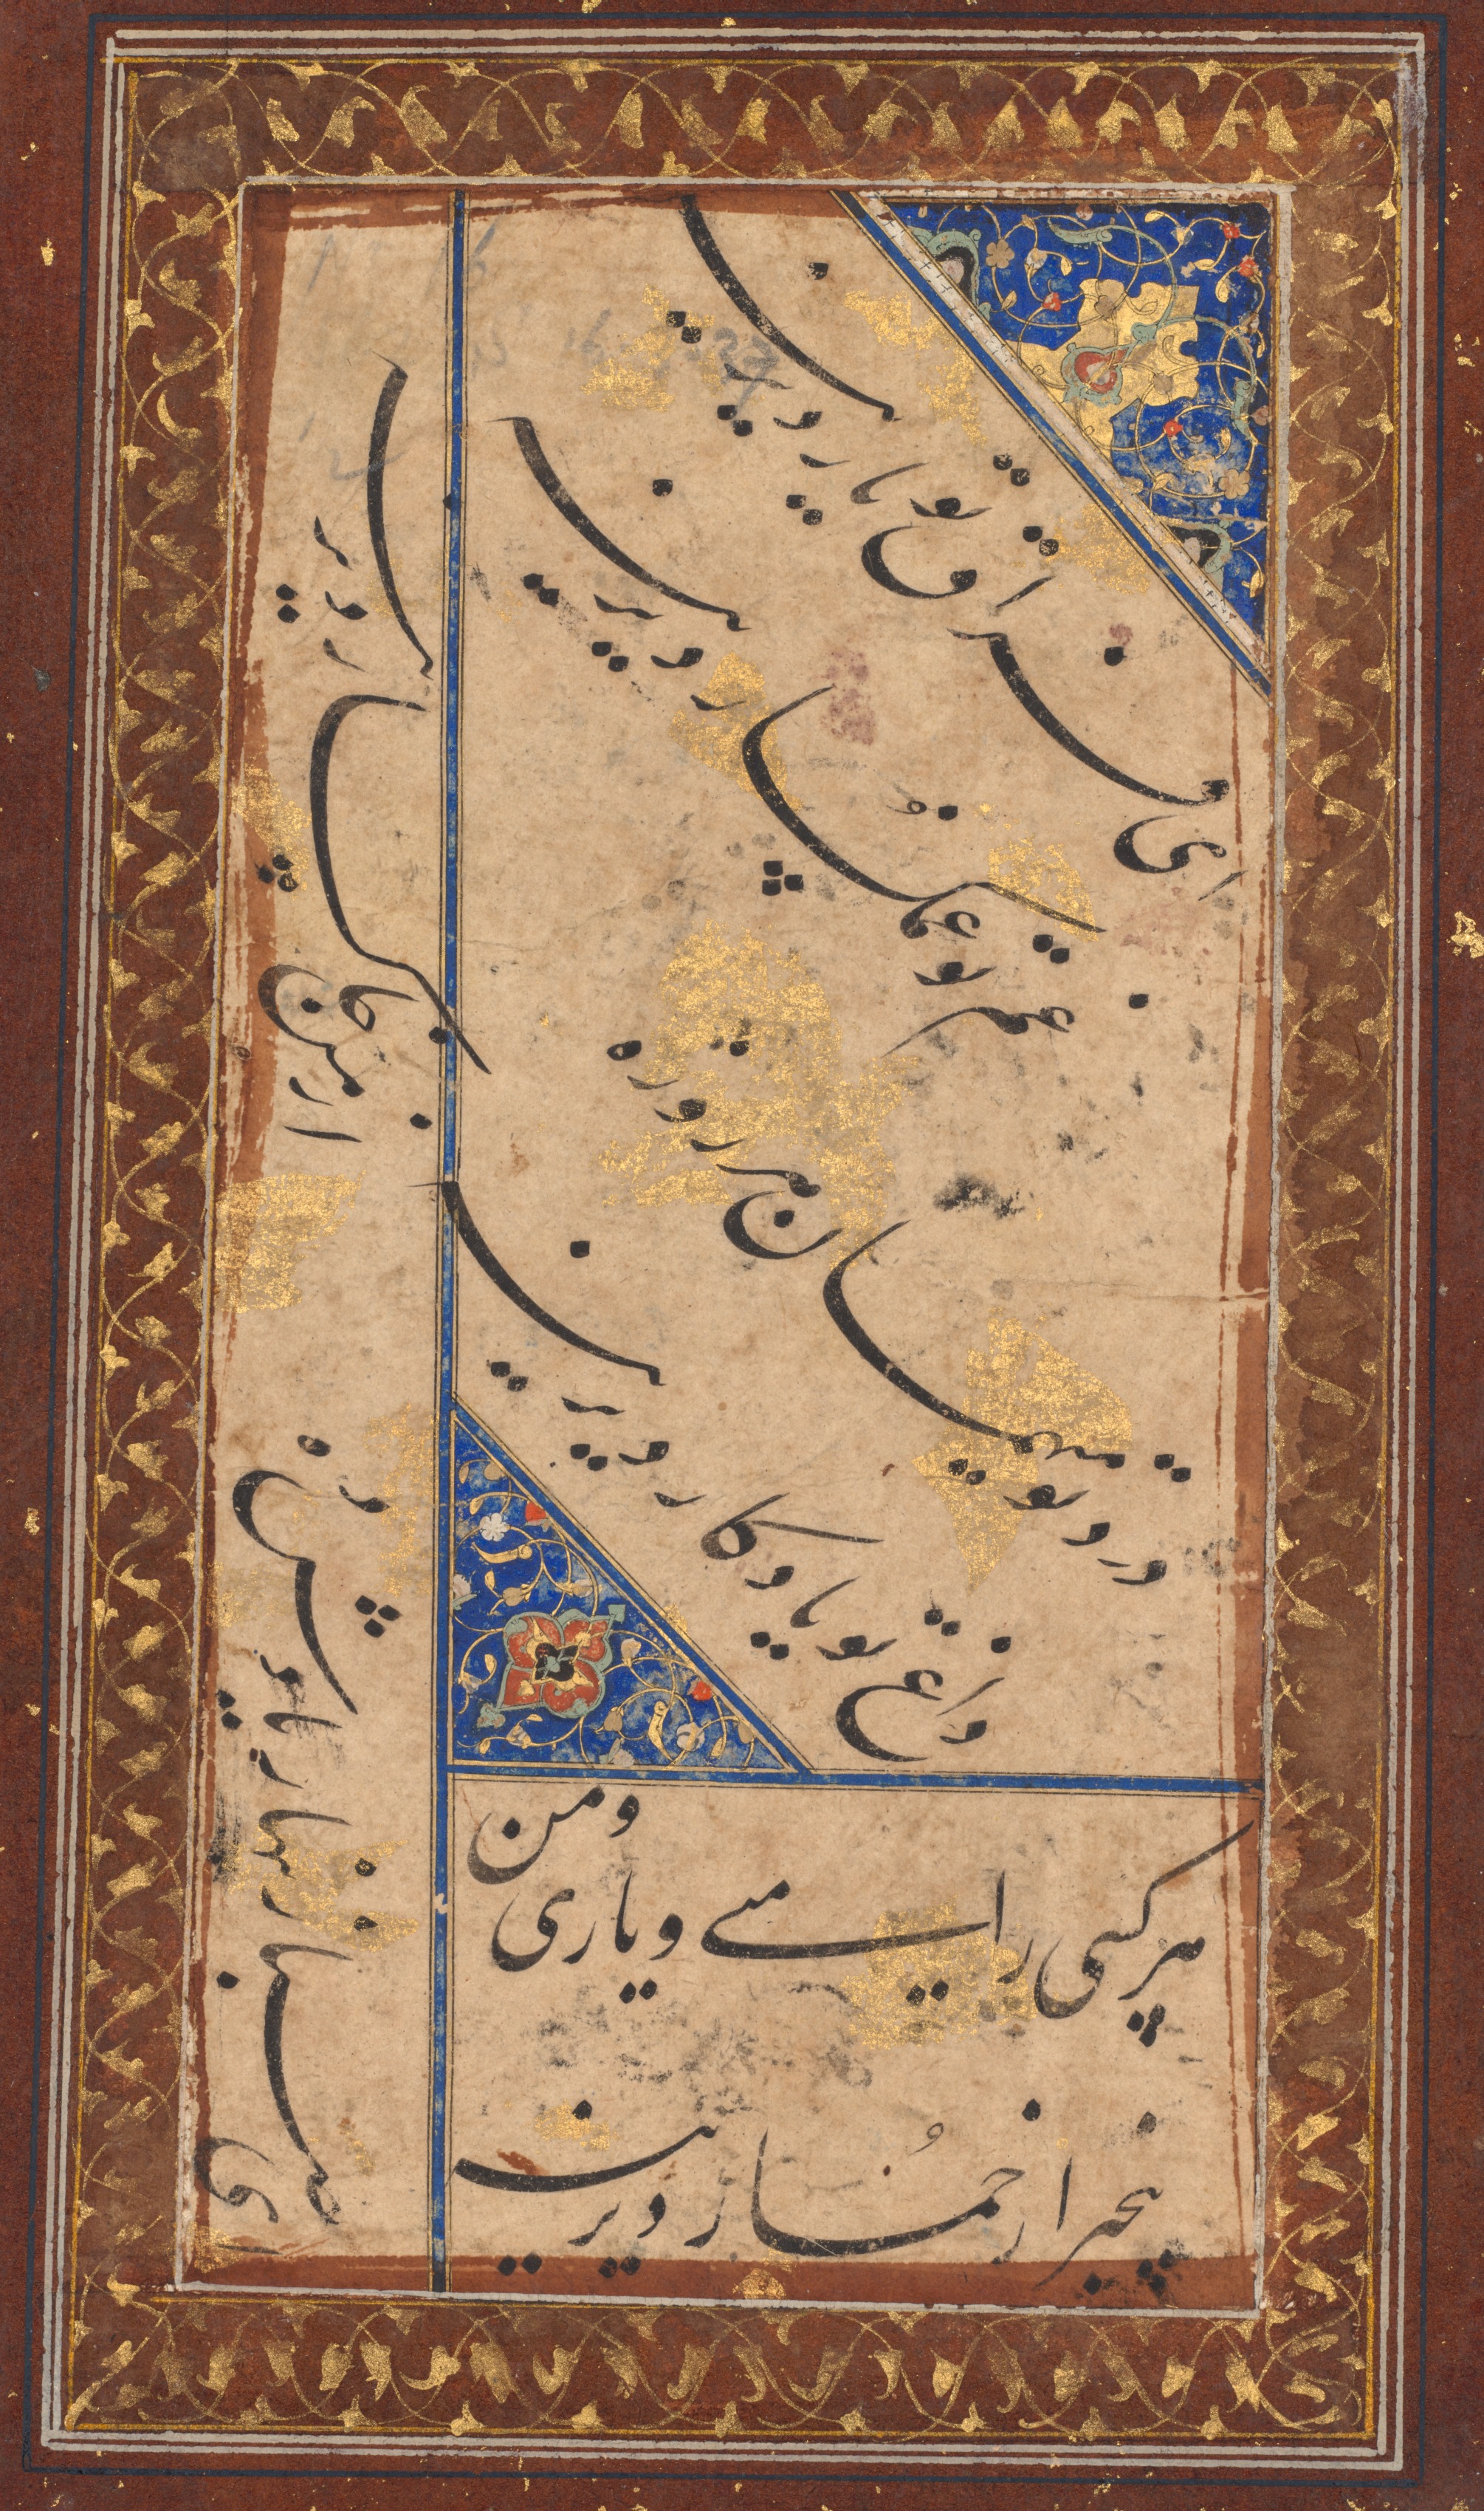 Calligraphy of a ghazal of Amir Khusrau Dihlavi (Indian, 1253–1325) (verso)